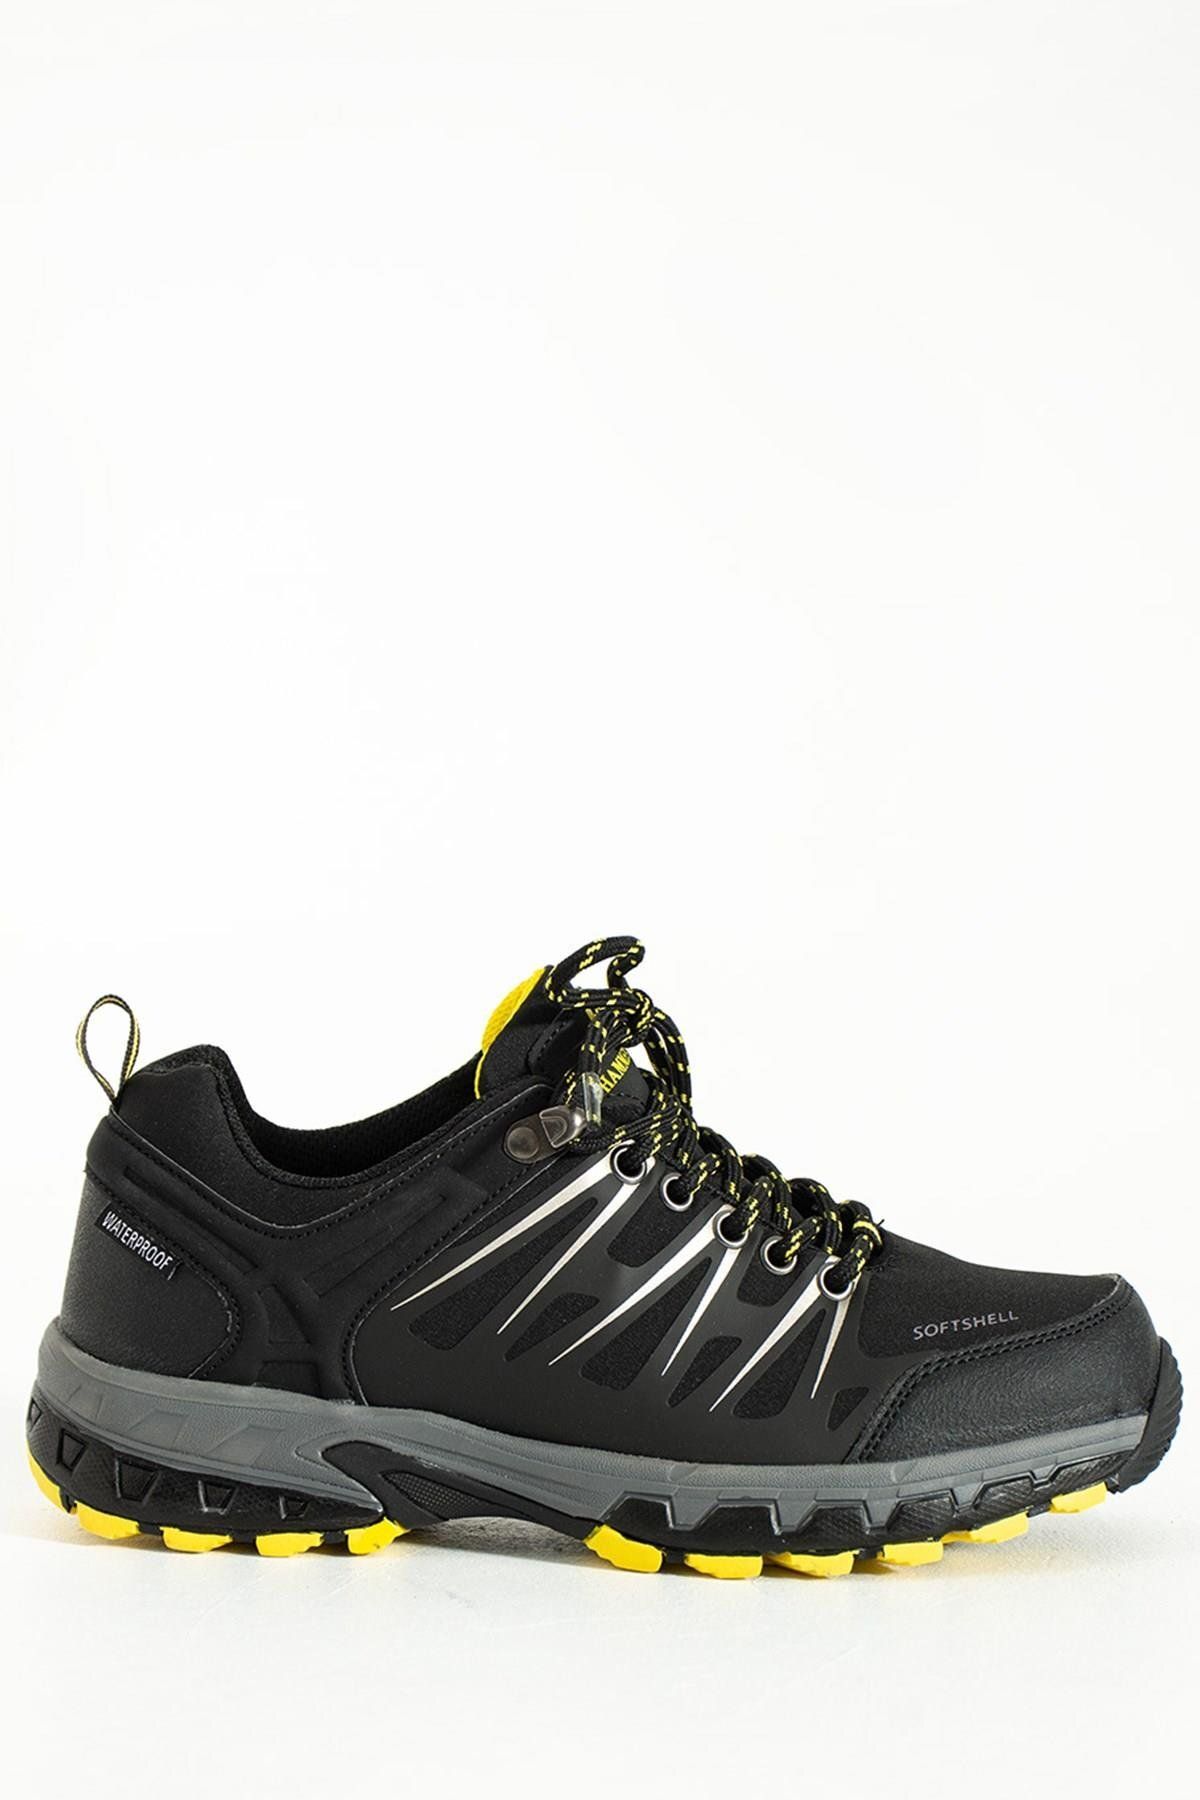 Hammer Jack Garson Ayakkabı Su Geçirmez Siyah-sarı Outdoor Unisex Ayakkabı